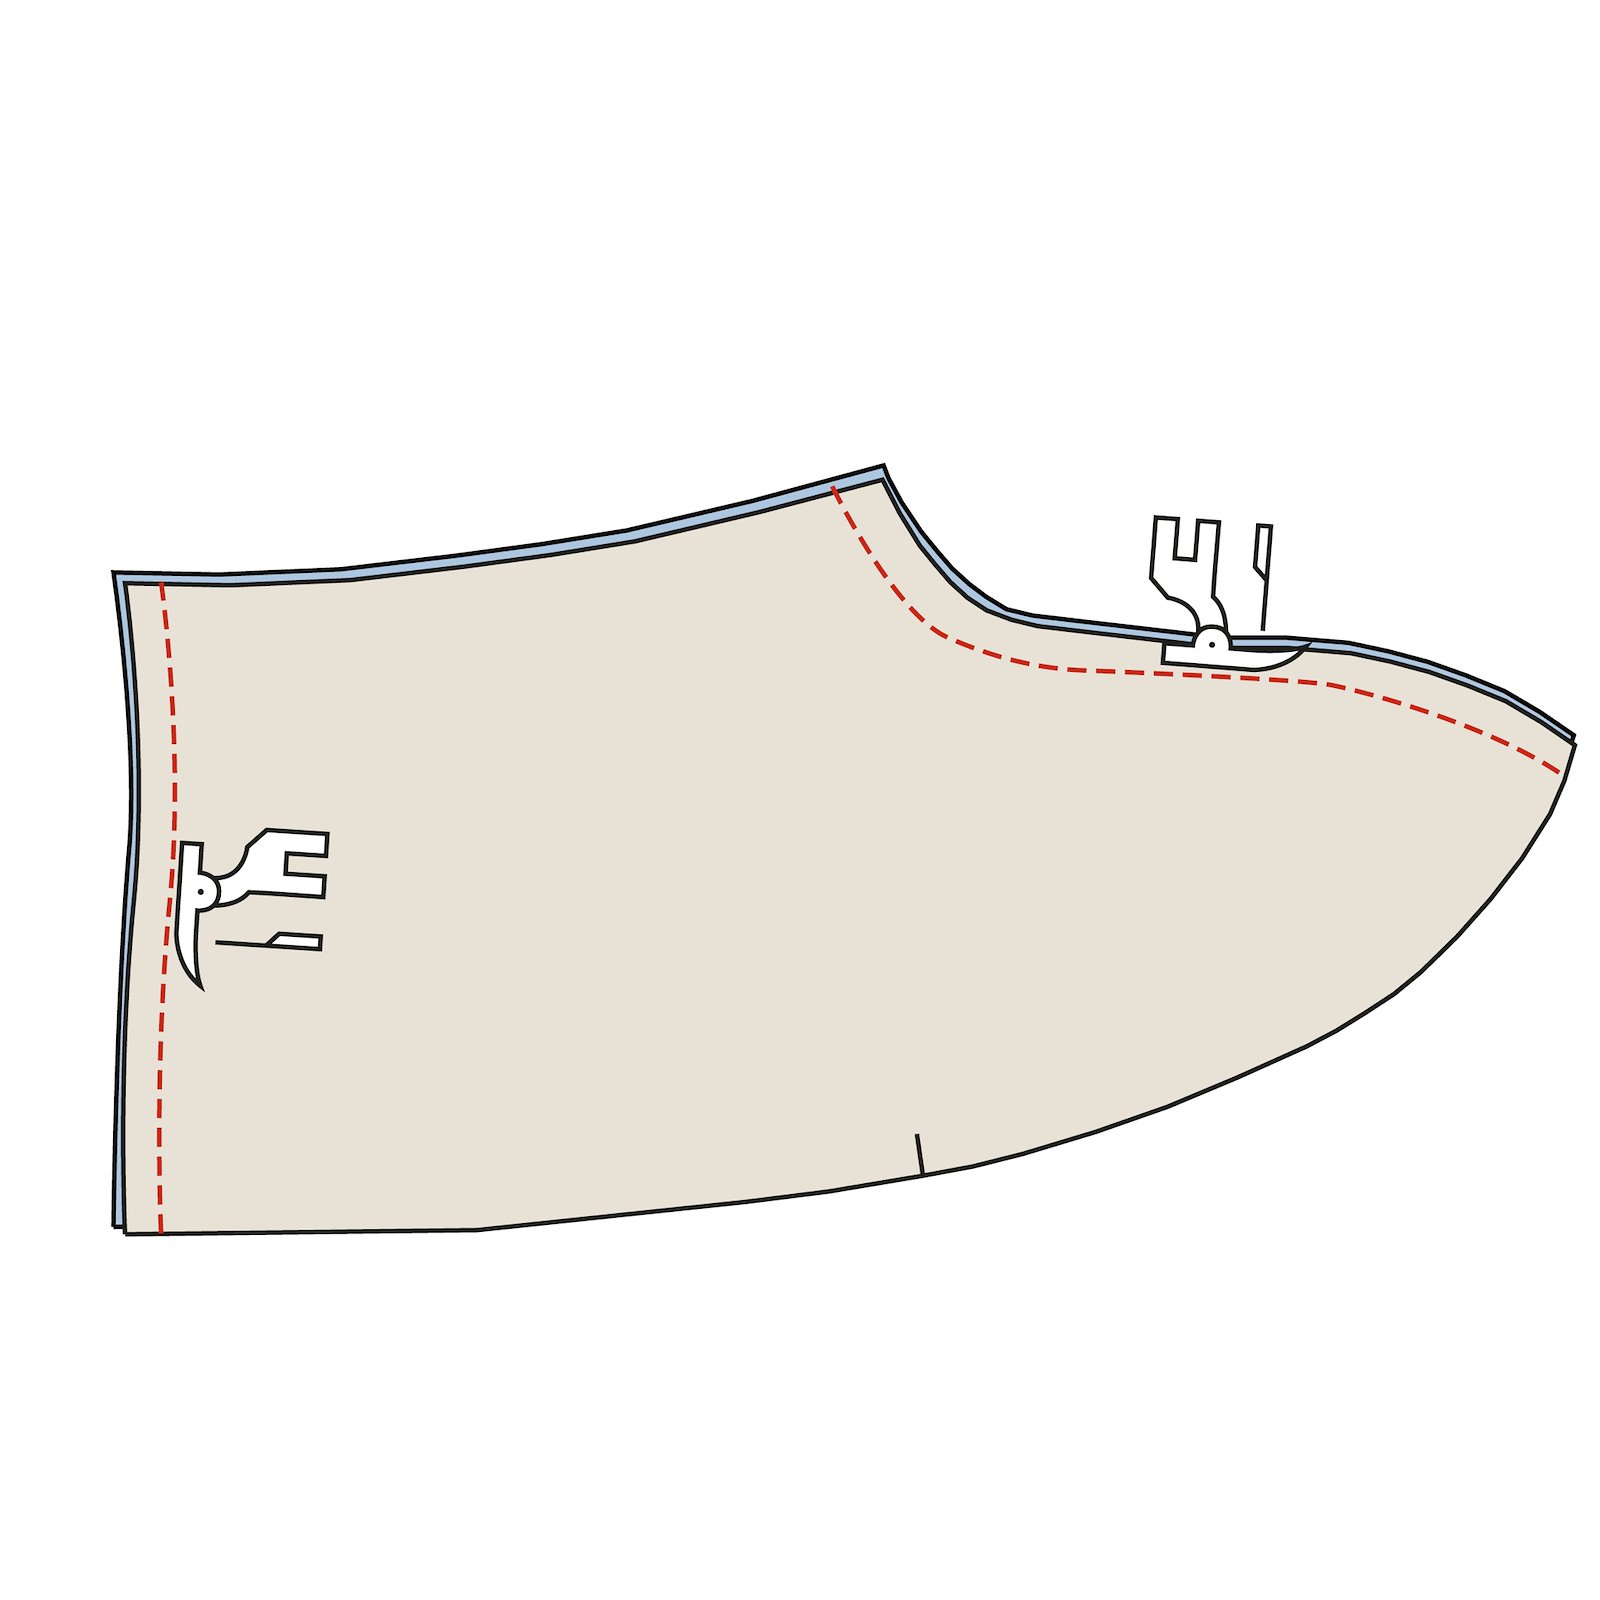 Sewing pattern: Adult Slippers DIY2315_step2.jpg